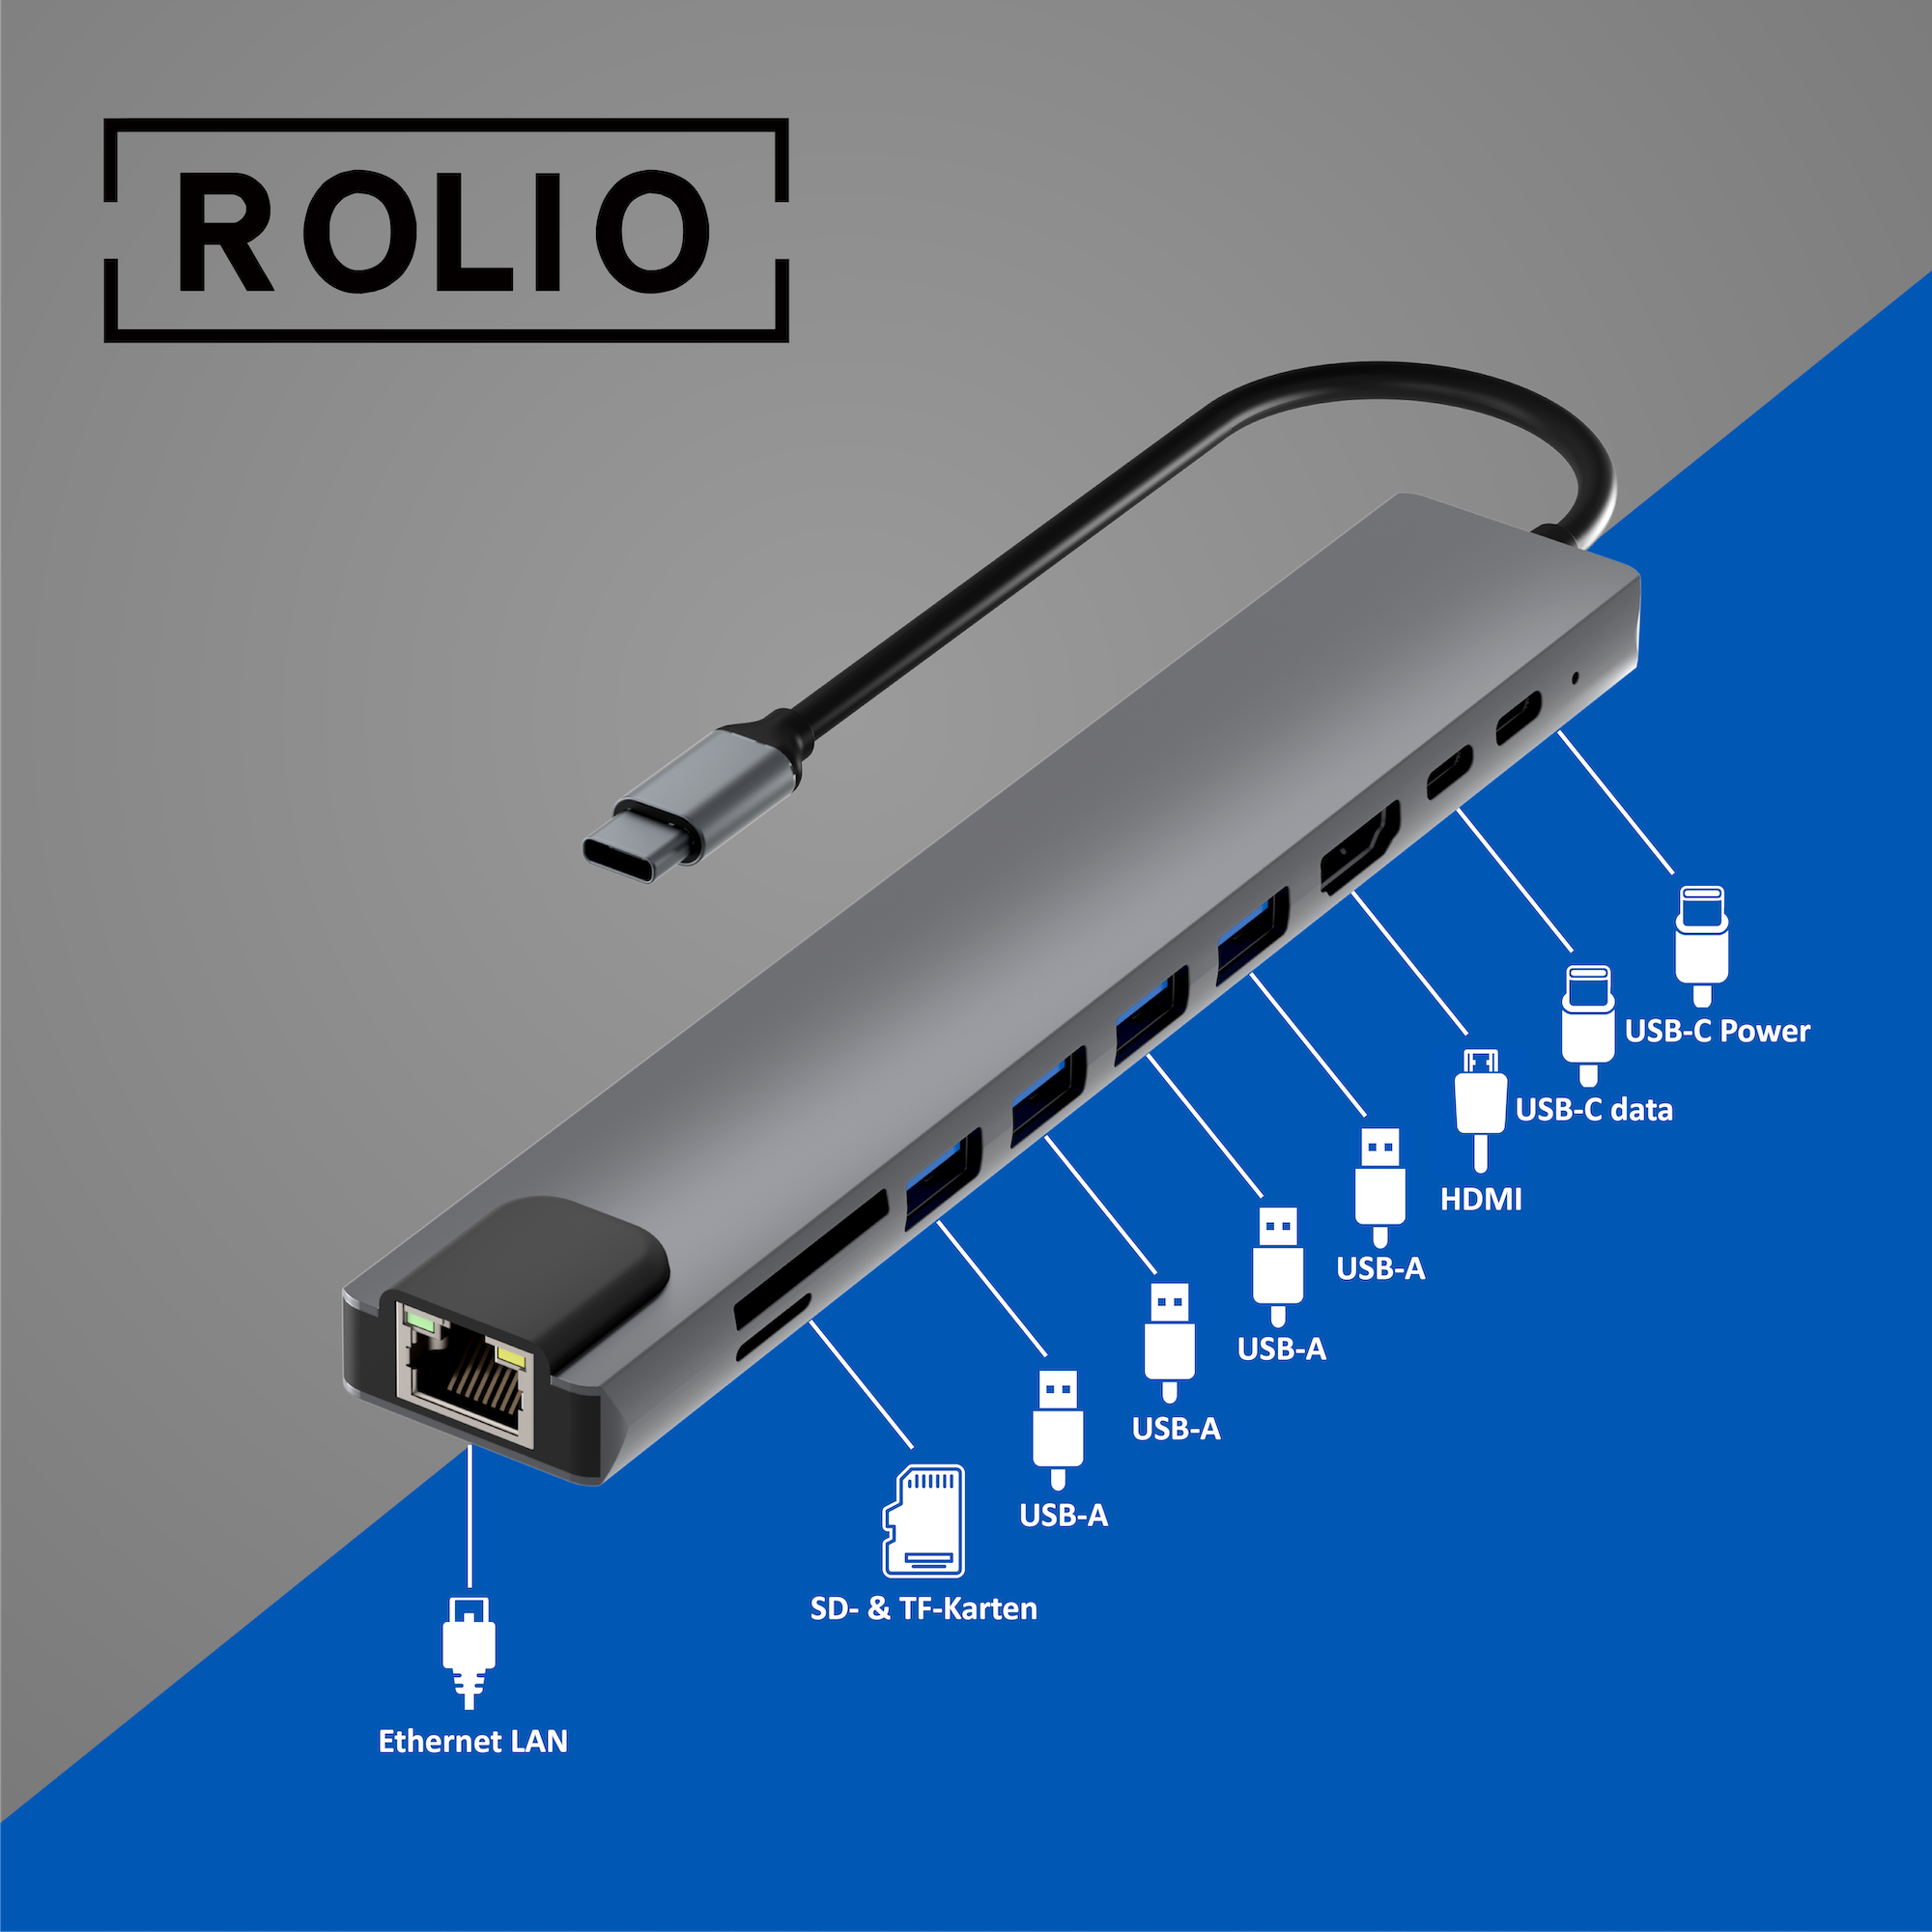 1 ROLIO 10 Hub, Hub, Space USB-C Grau in